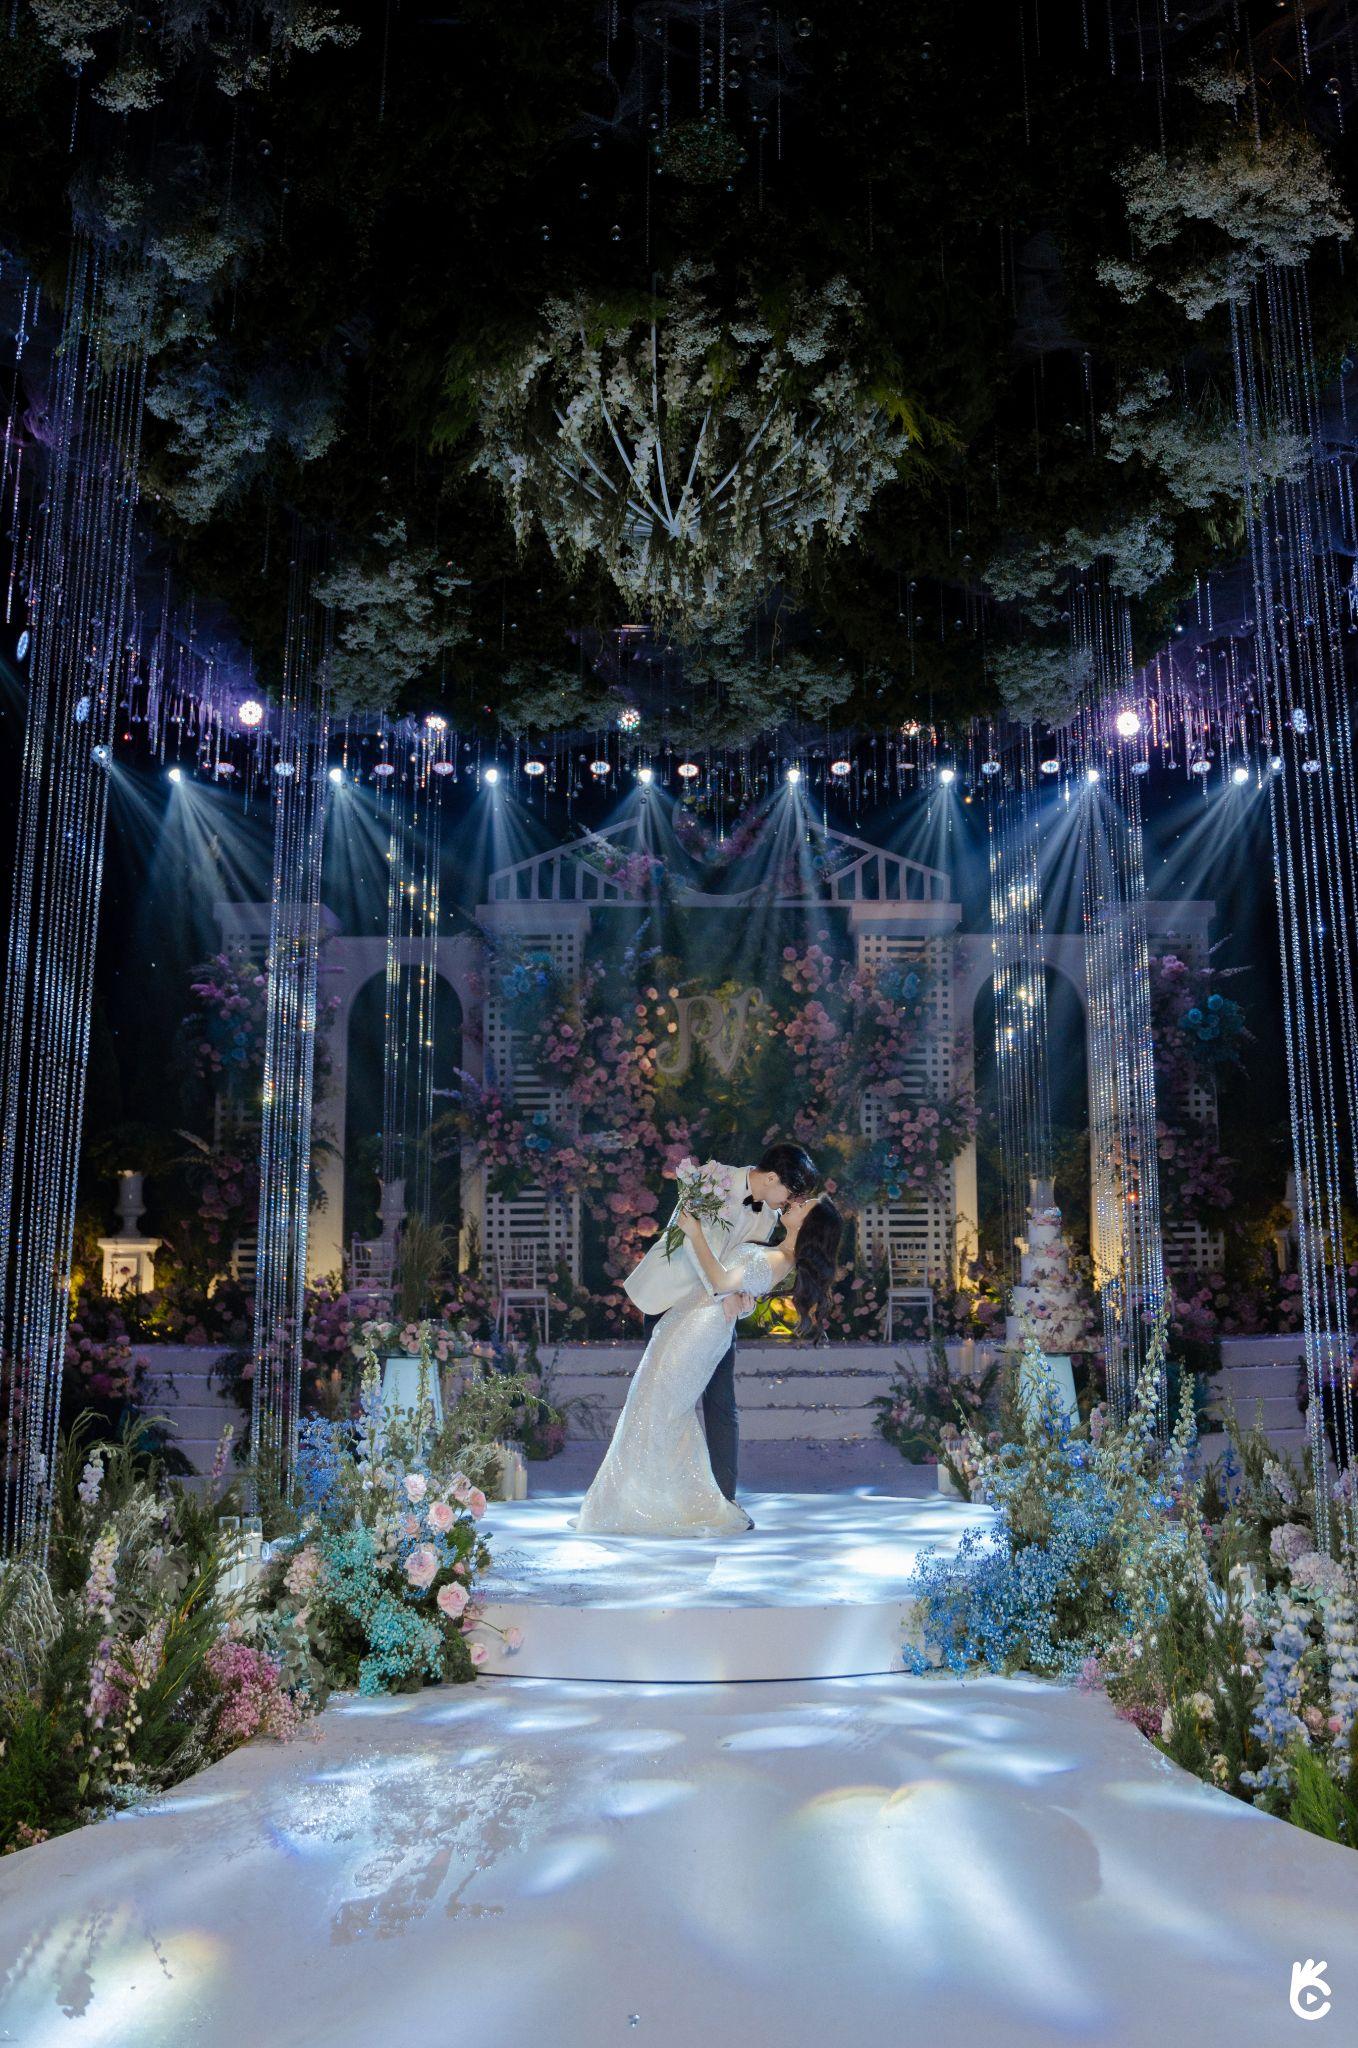 Mãn nhãn trước khoảnh khắc hiện thực hoá lễ cưới trong mơ “Garden D'este Wedding” - Ảnh 2.